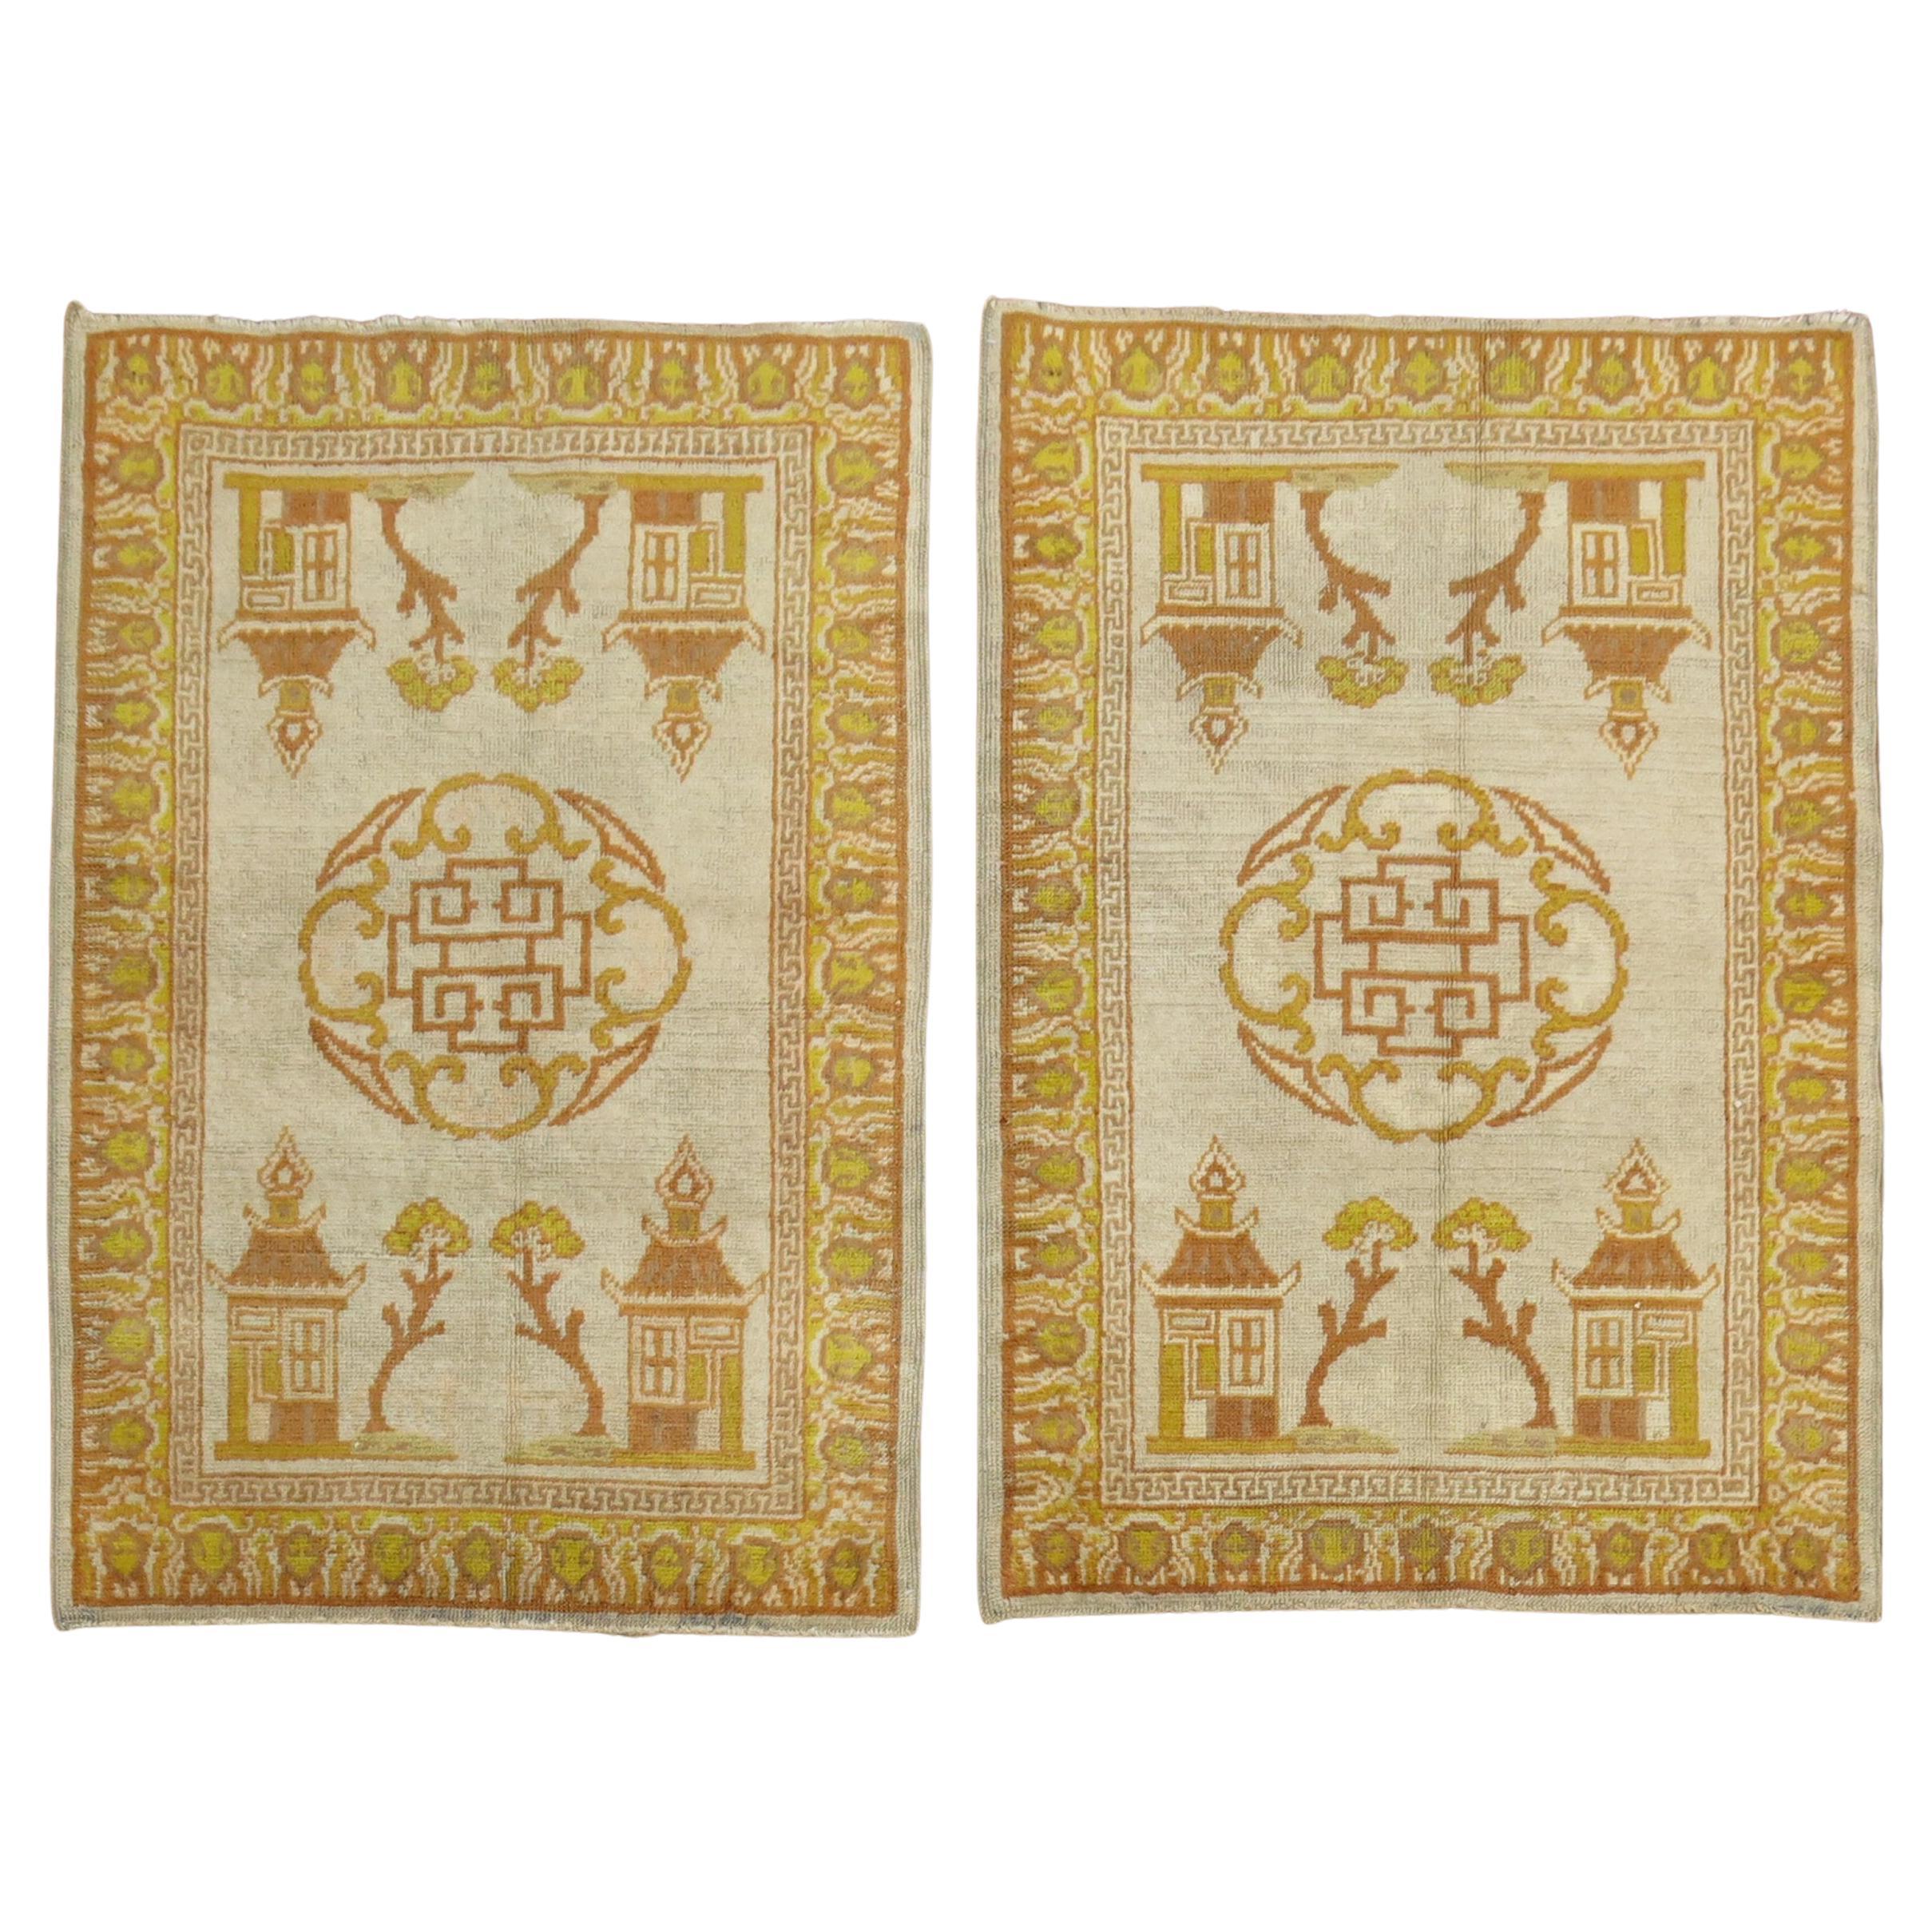 Passendes Paar antiker Khotan-Teppiche